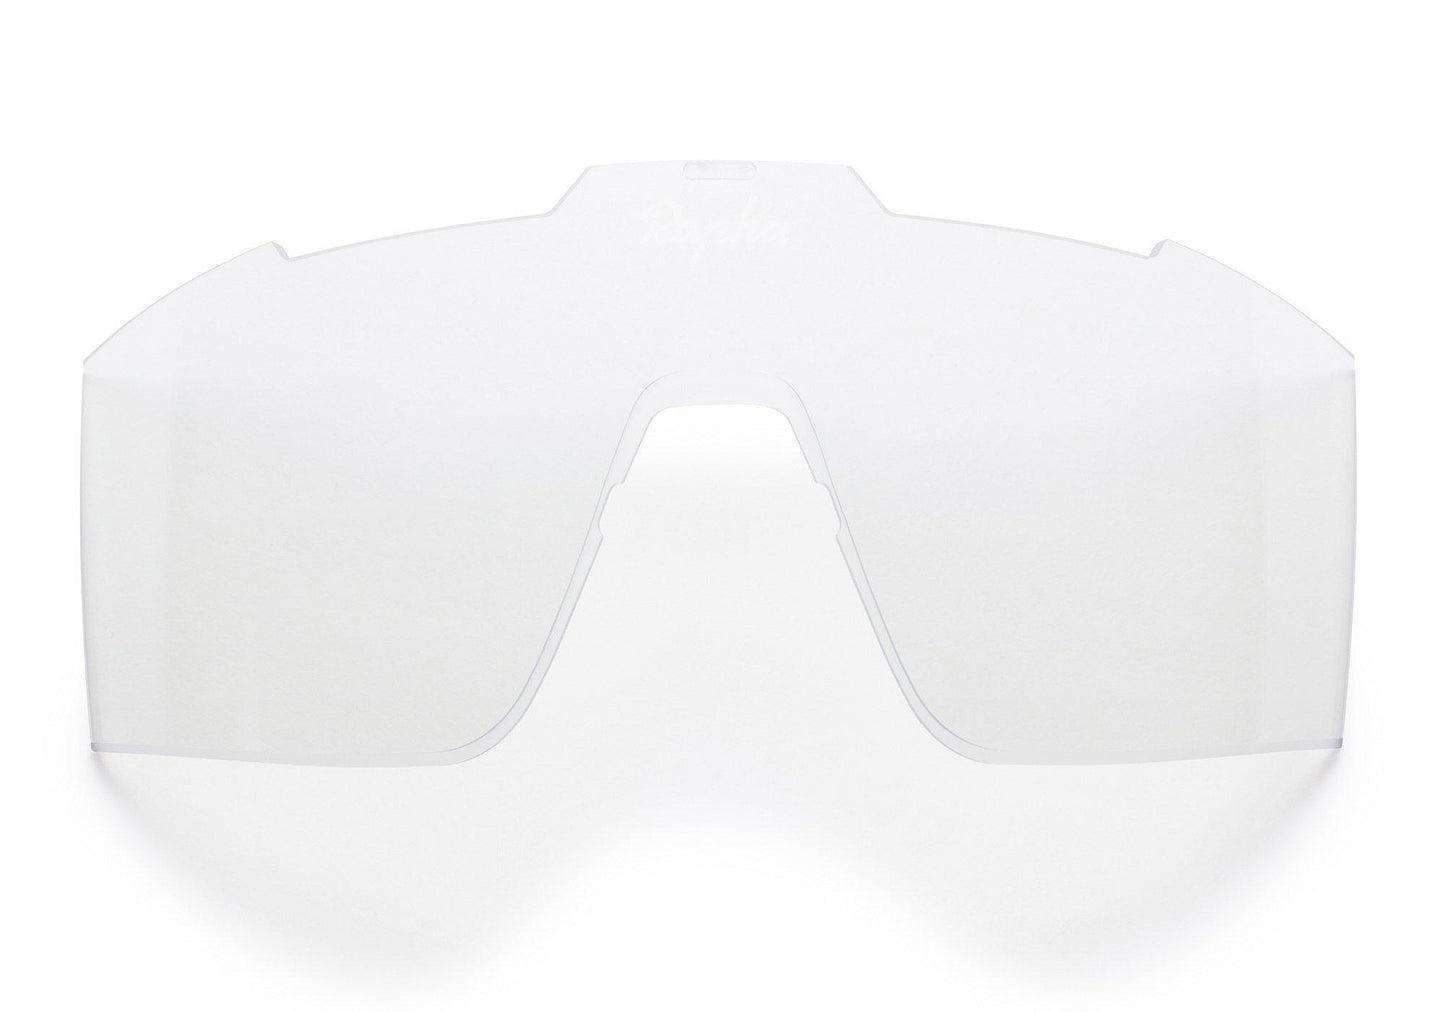 Rapha Pro Team Full Frame Sunglasses Black, Black Mirror Lens